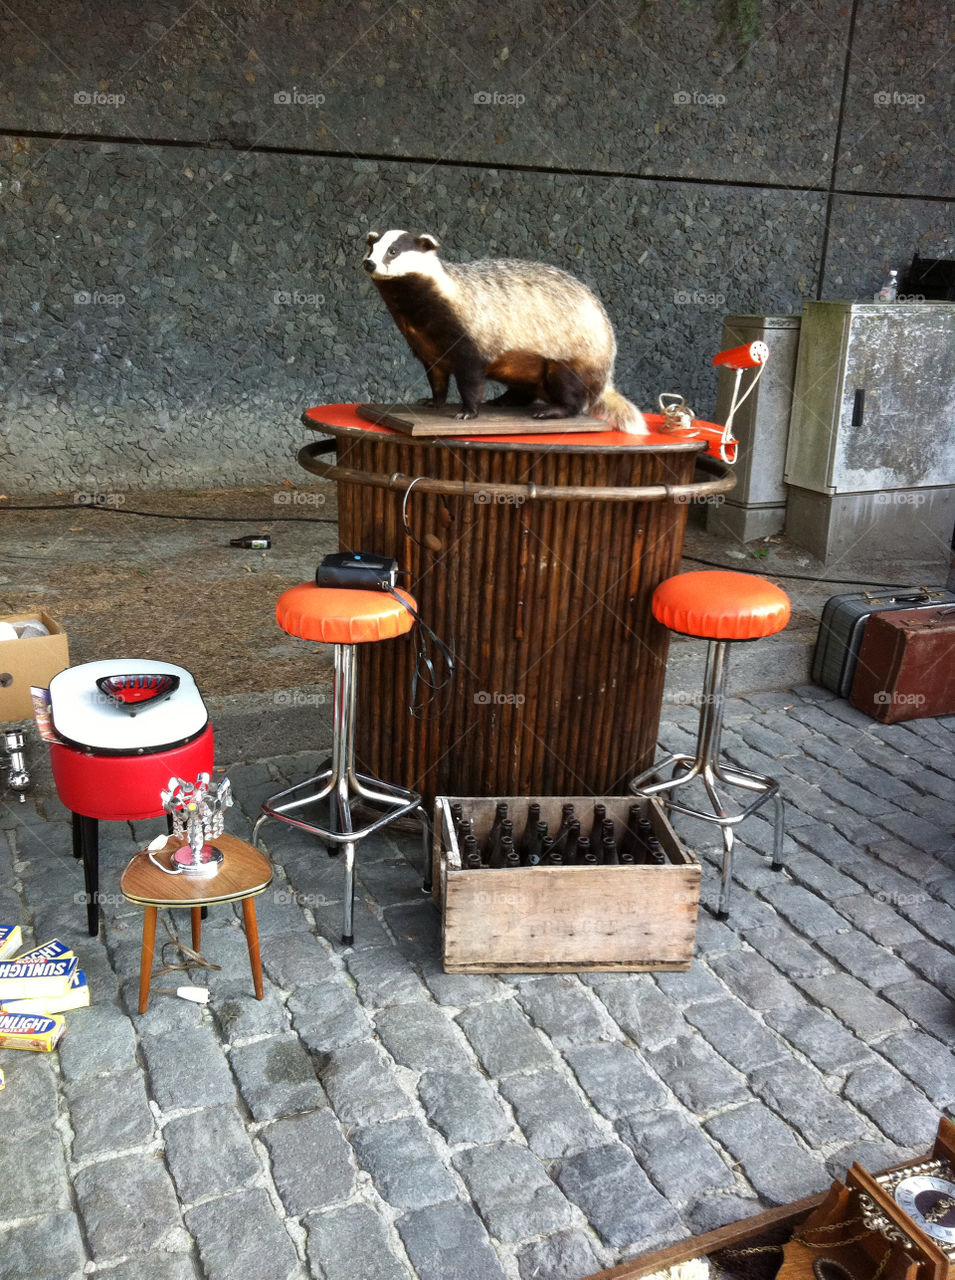 bruges badger street market by chrisnic